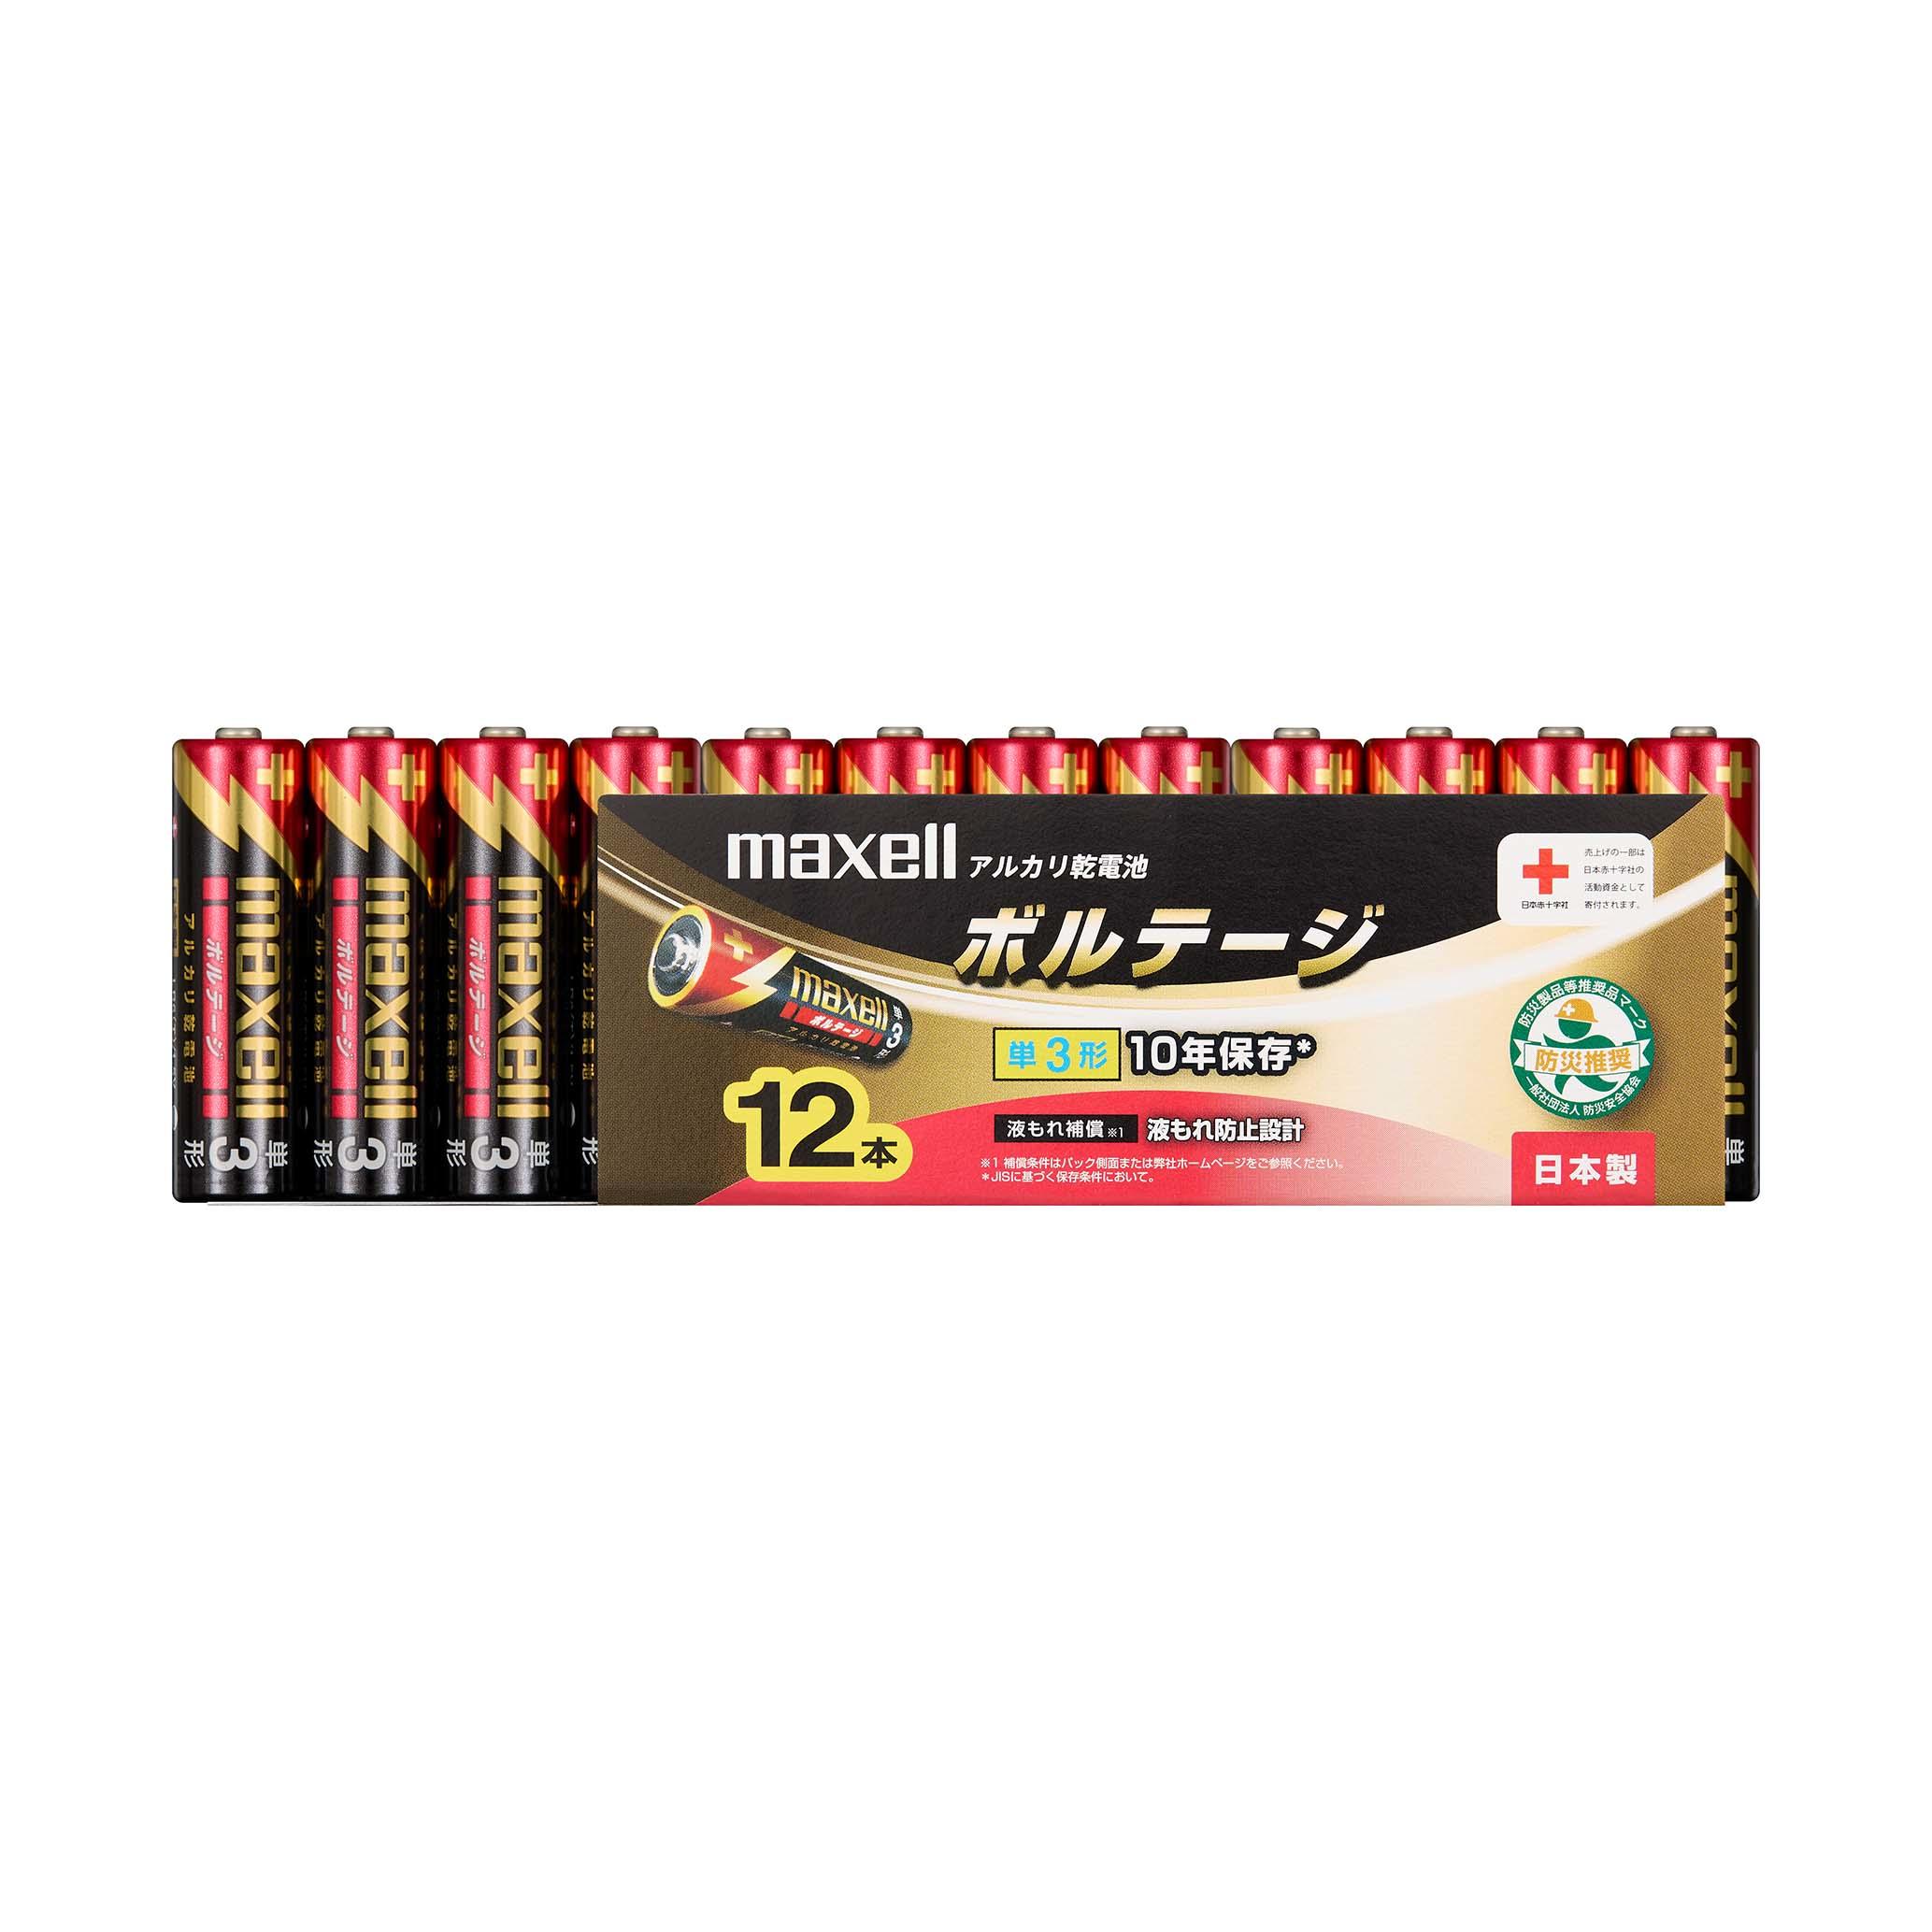 160円 特価品コーナー☆ maxell アルカリ乾電池単4形8本パック ボルテージ LR03T8P マクセル